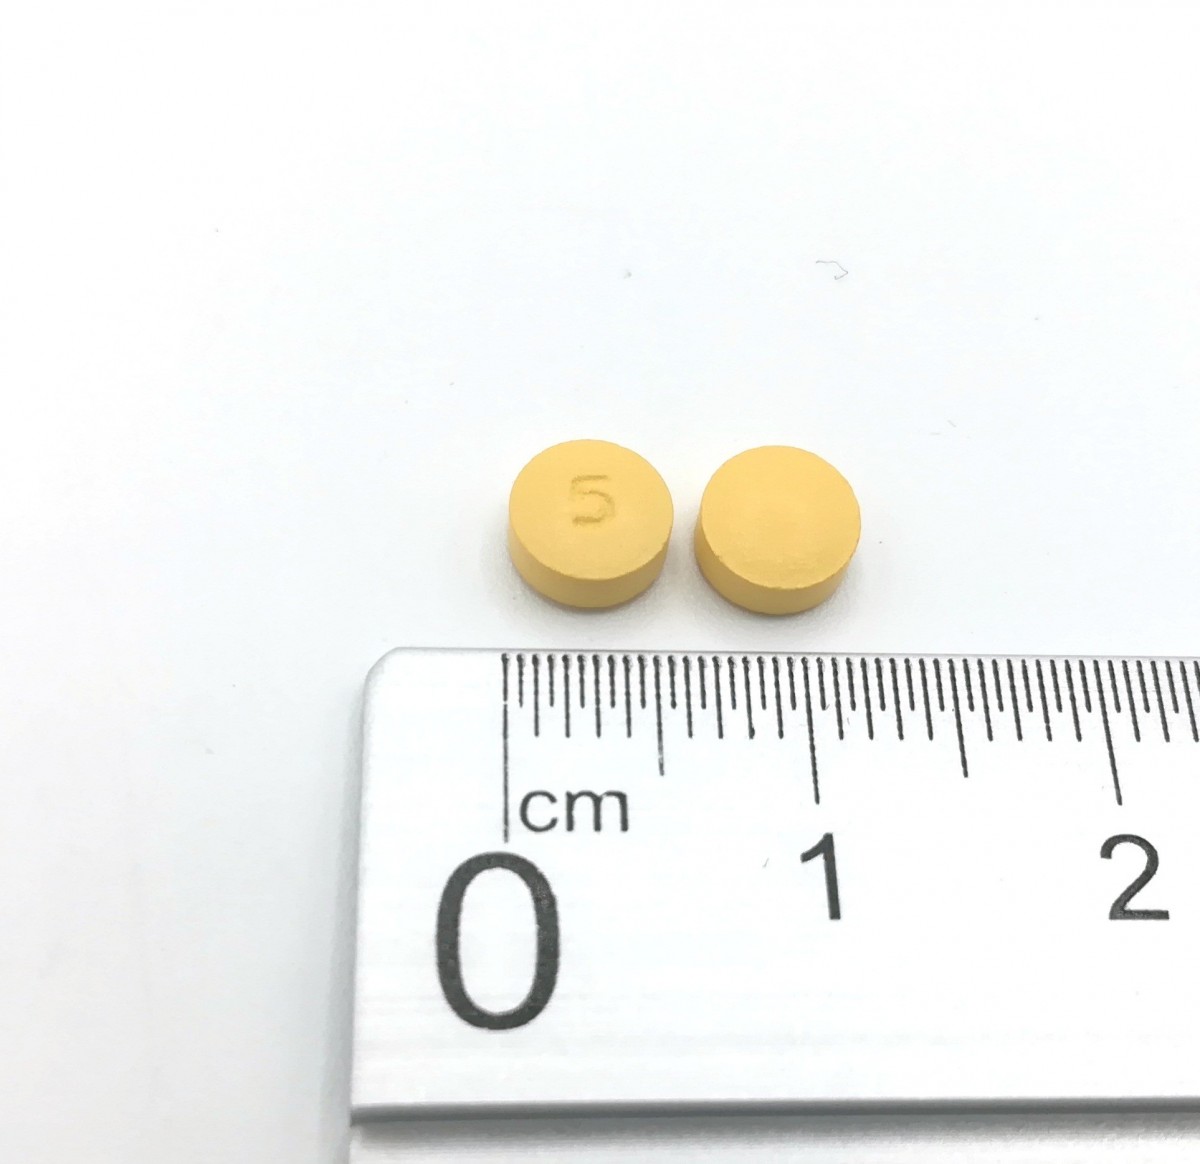 ROSUVASTATINA NORMON 5 MG COMPRIMIDOS RECUBIERTOS CON PELICULA EFG, 28 comprimidos fotografía de la forma farmacéutica.